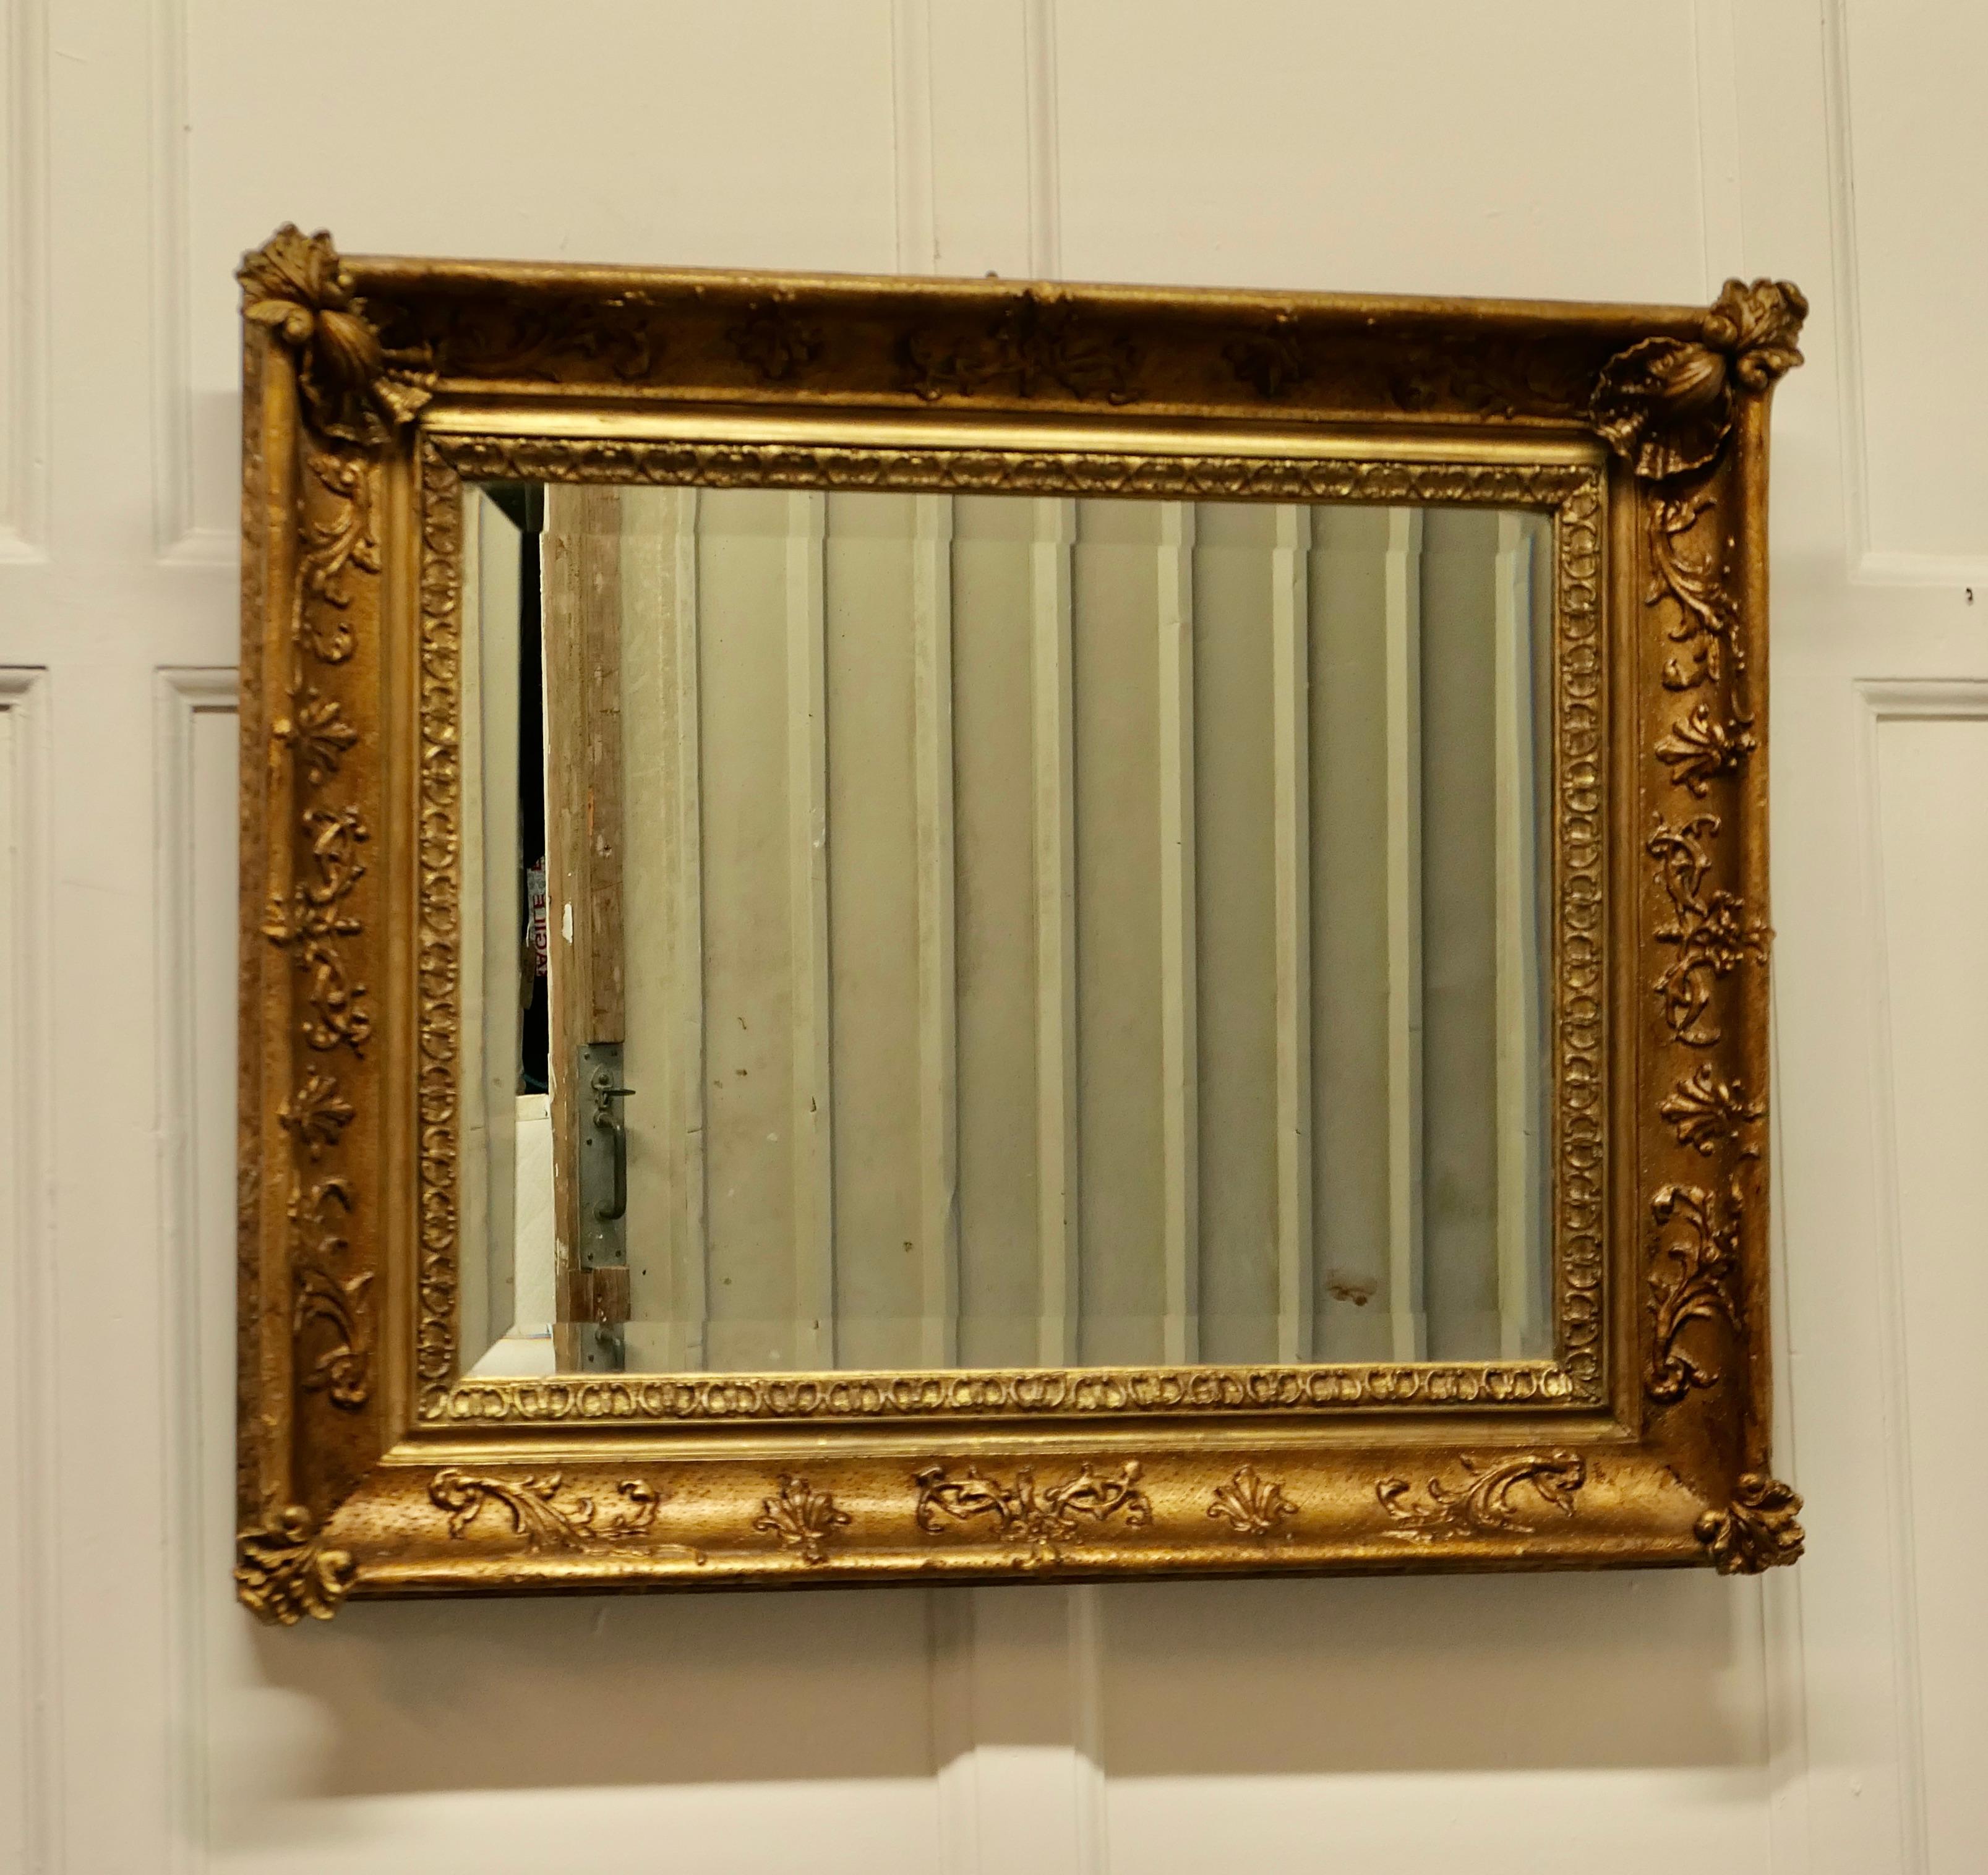 Joli miroir mural rococo carré et doré.

Le miroir est dans un cadre doré de style rococo, il est de forme presque carrée avec un cadre décoré de 4